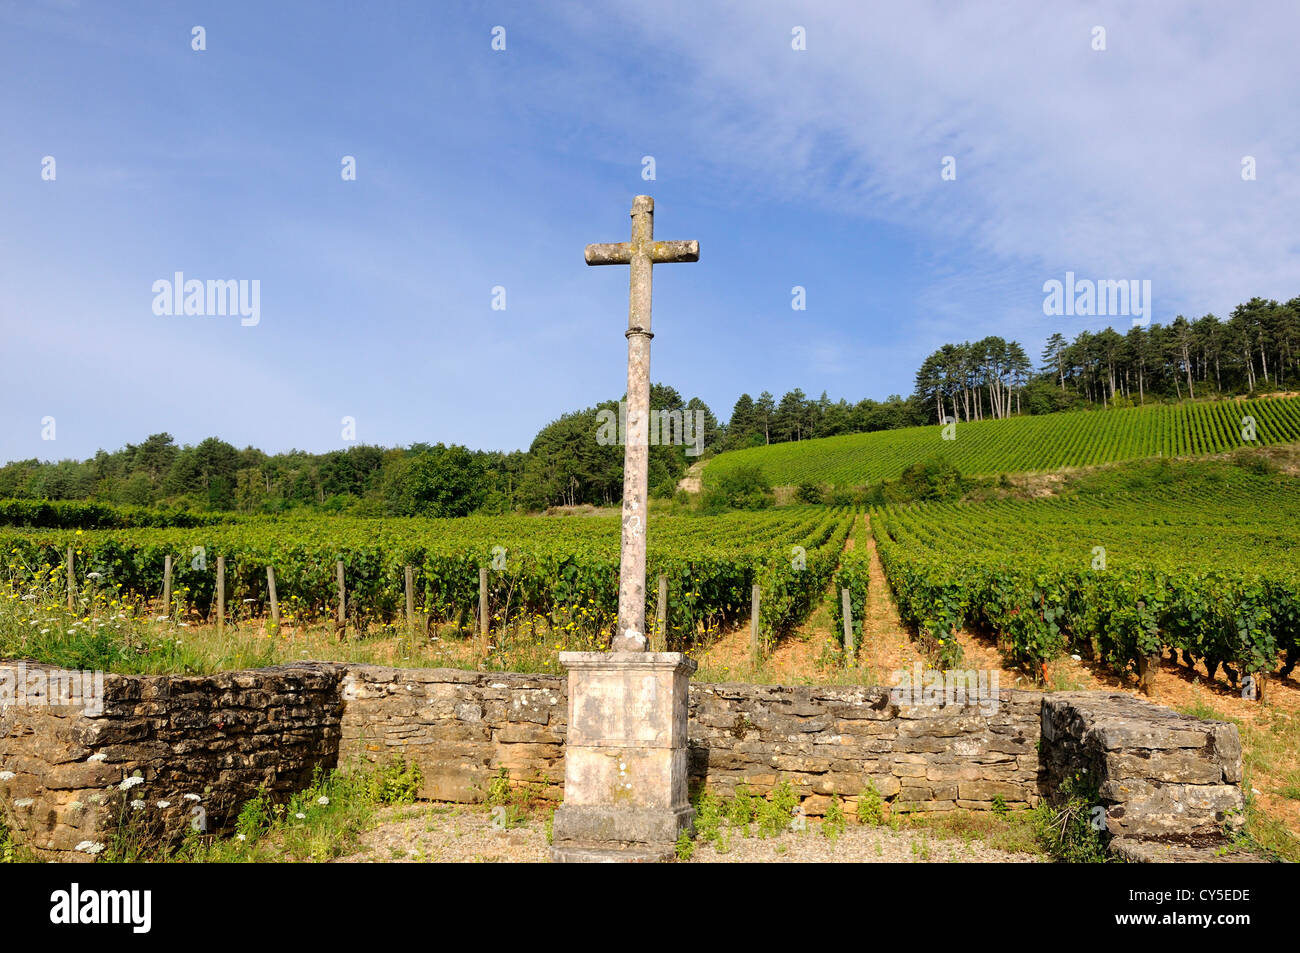 Croce di vigneto in Borgogna. Cote d'Or. Bourgogne, Franche Comte. Francia. Foto Stock